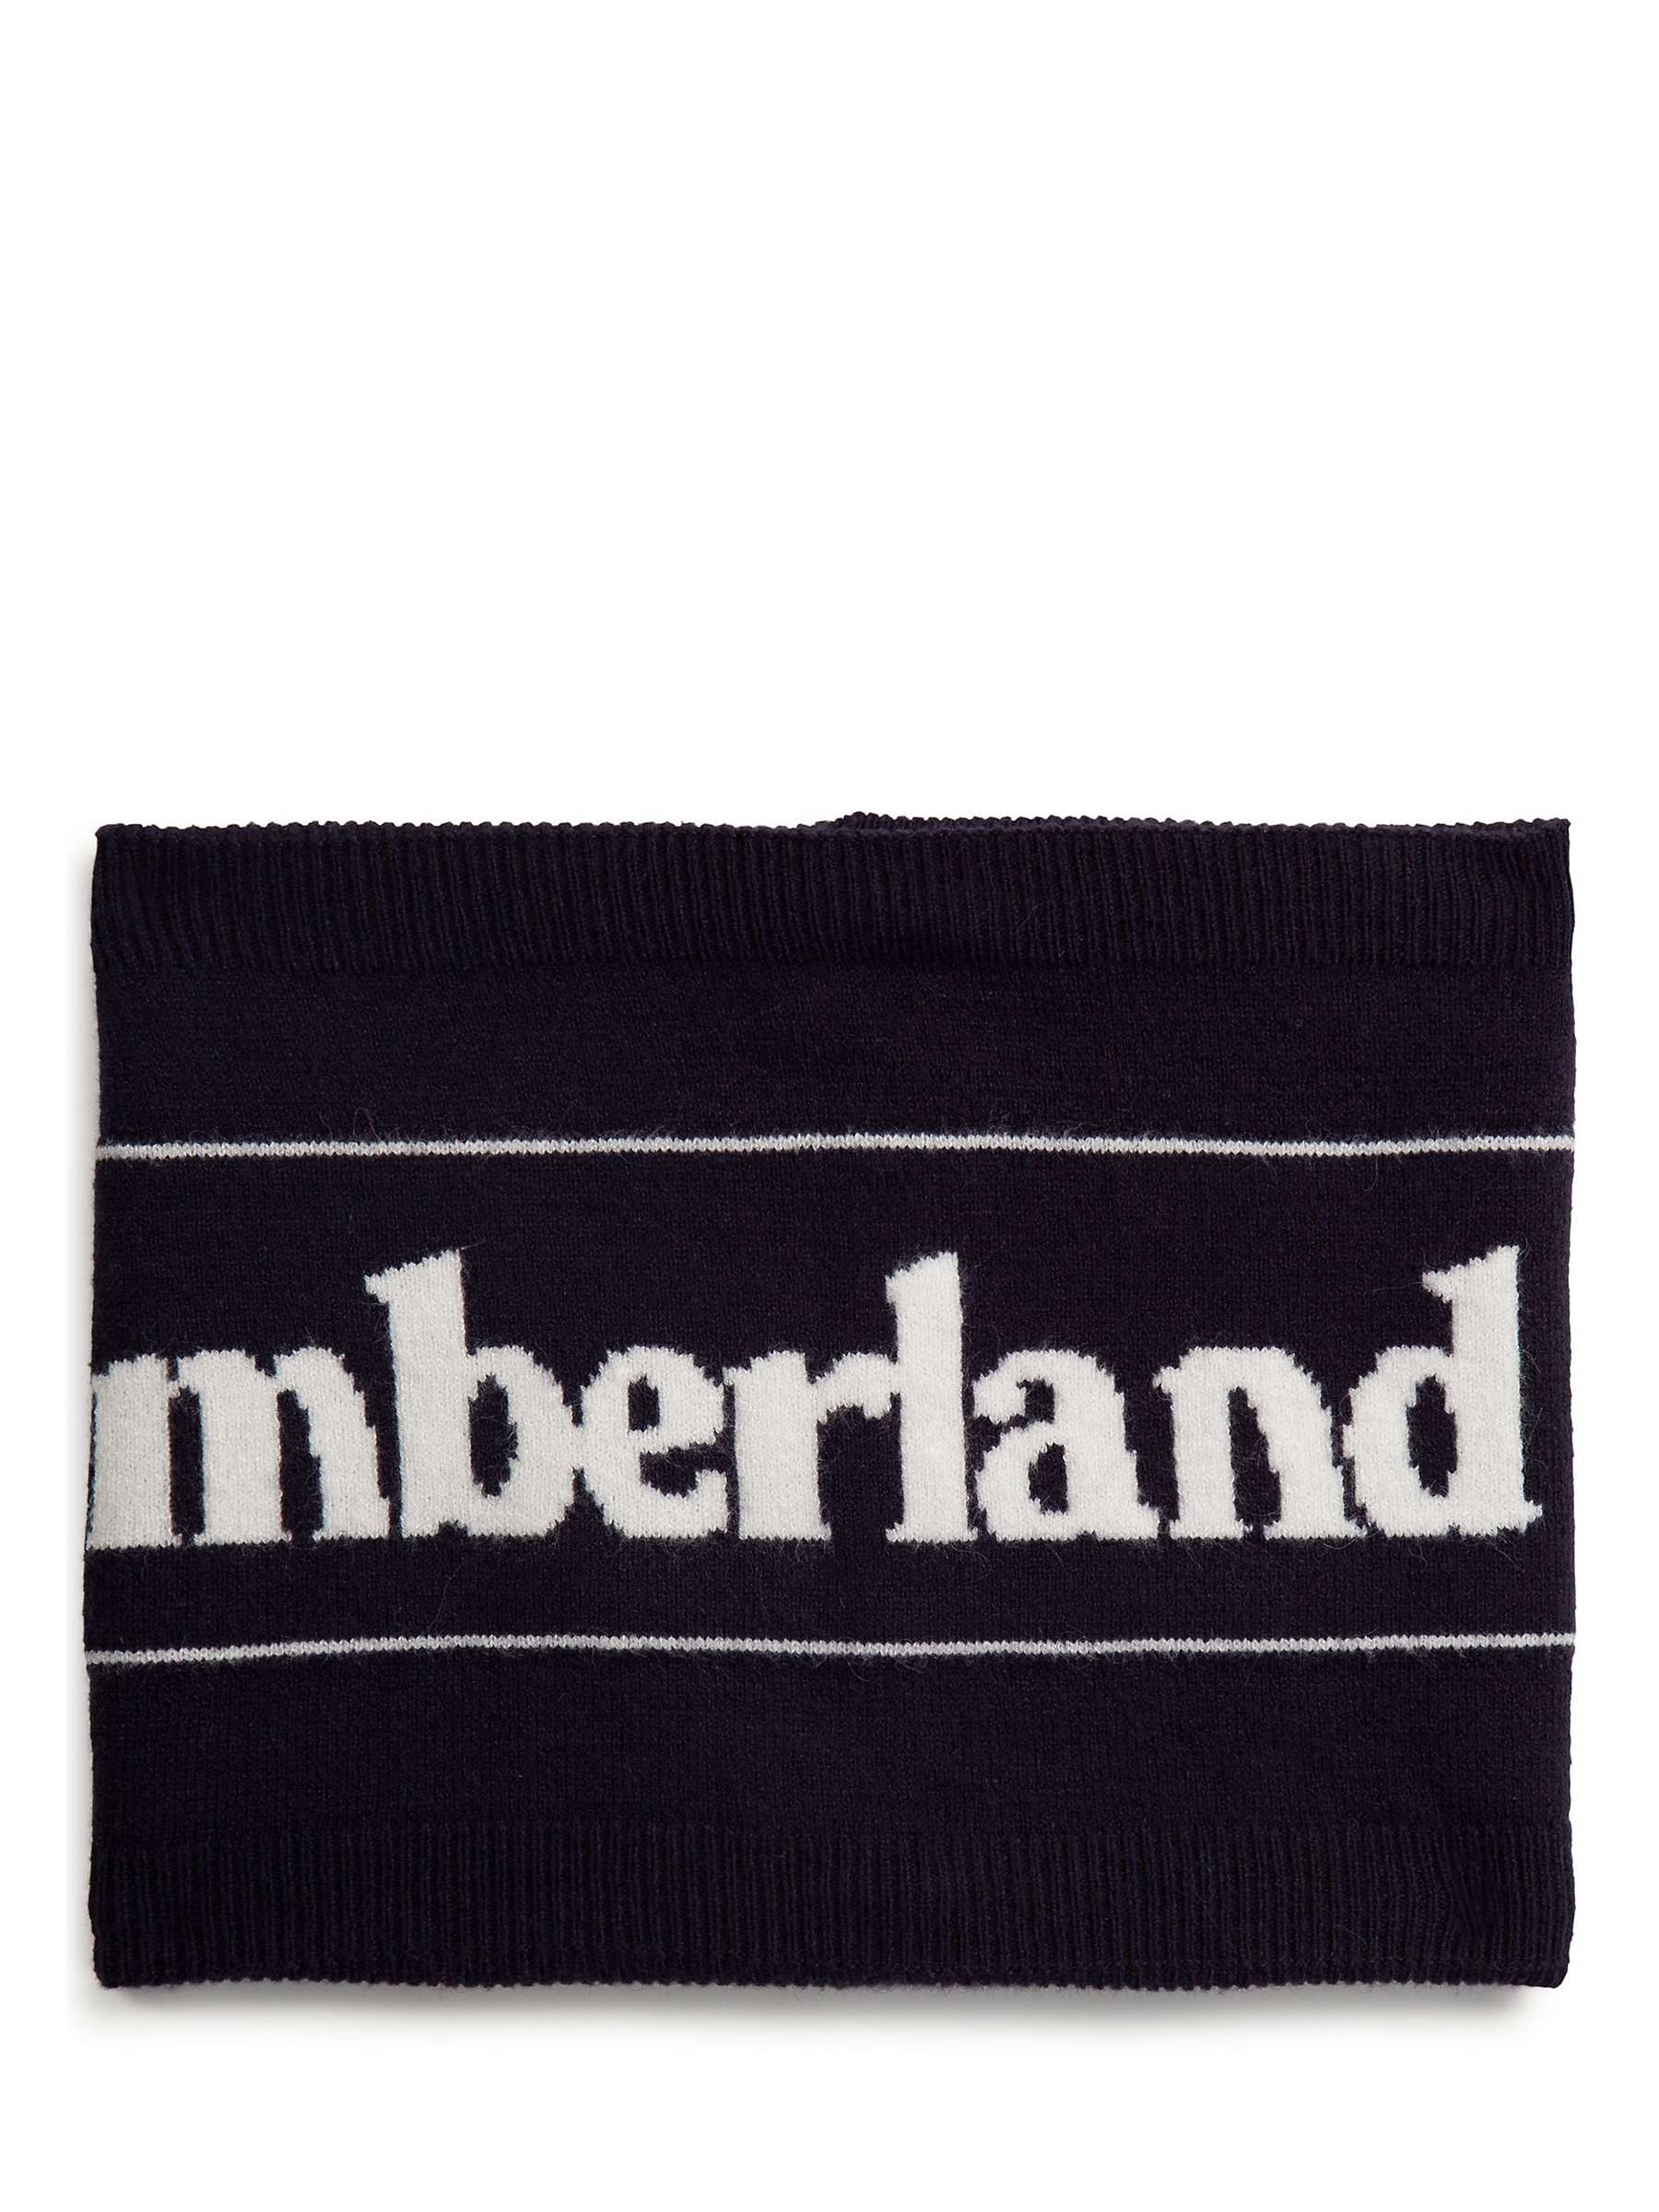 Buy Timberland Kids' Logo Snood, Navy/White Online at johnlewis.com